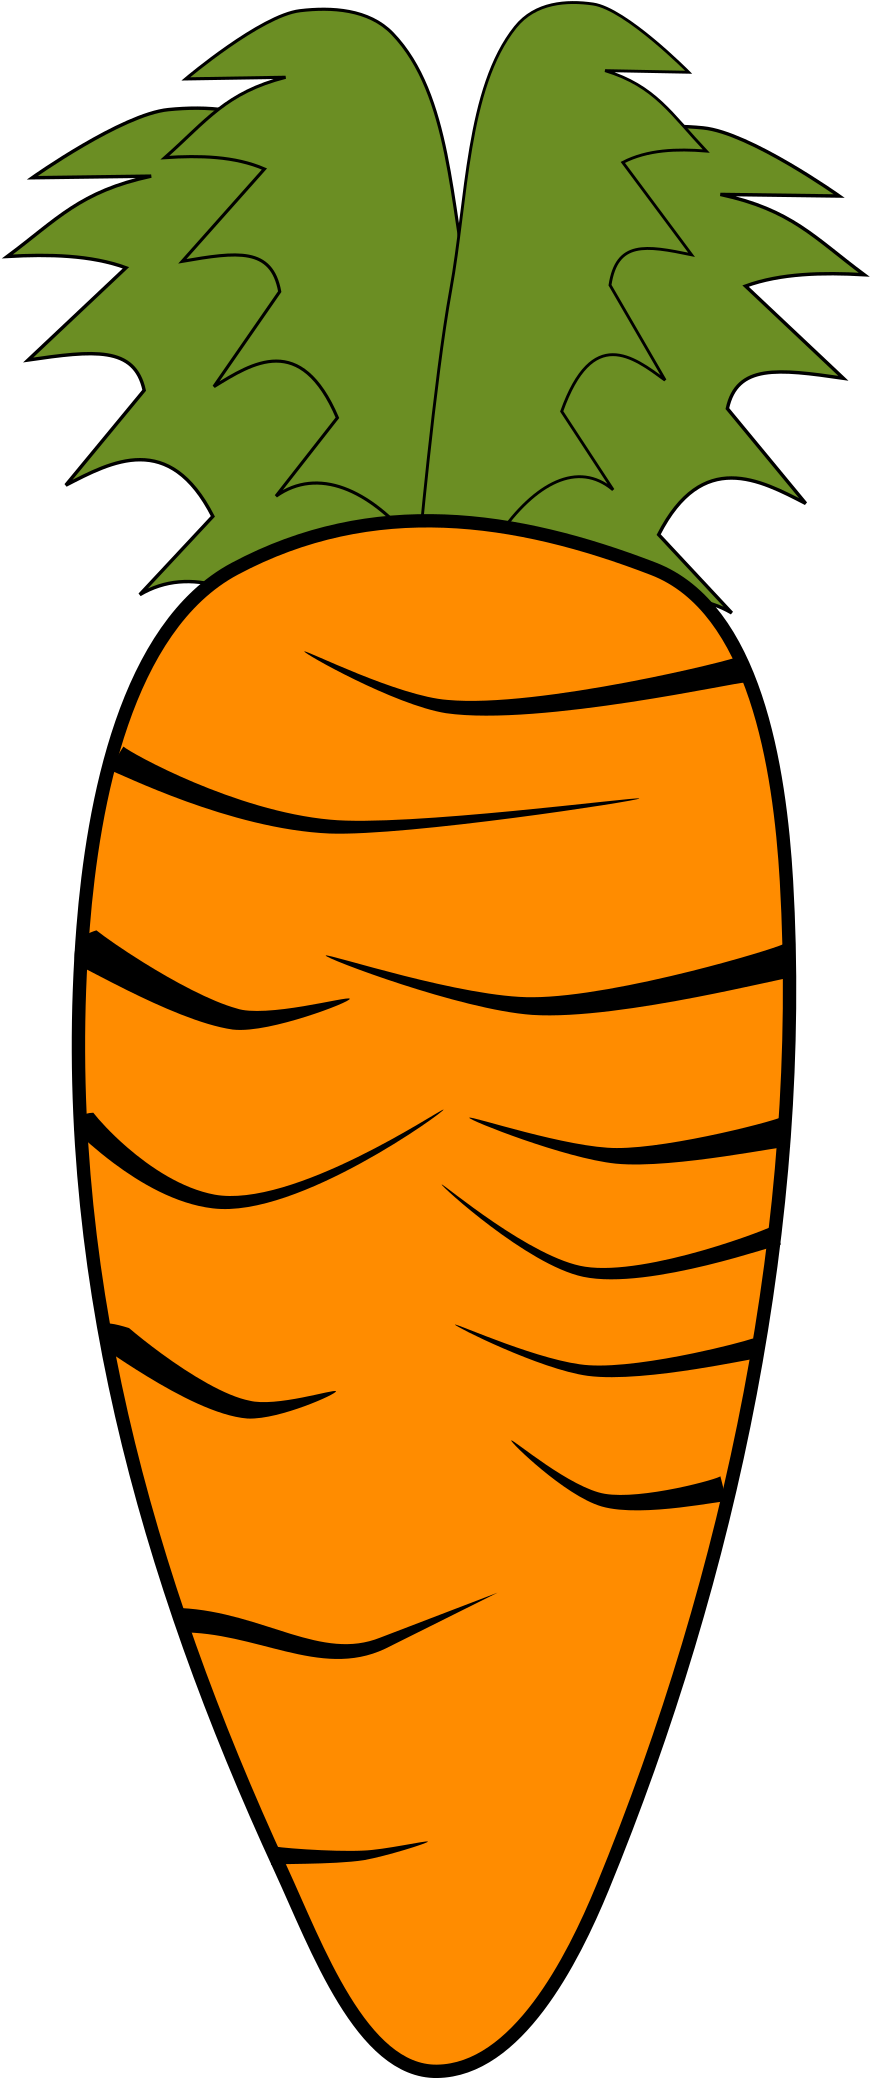 Big Image - Clip Art Of Carrots (1029x2400)